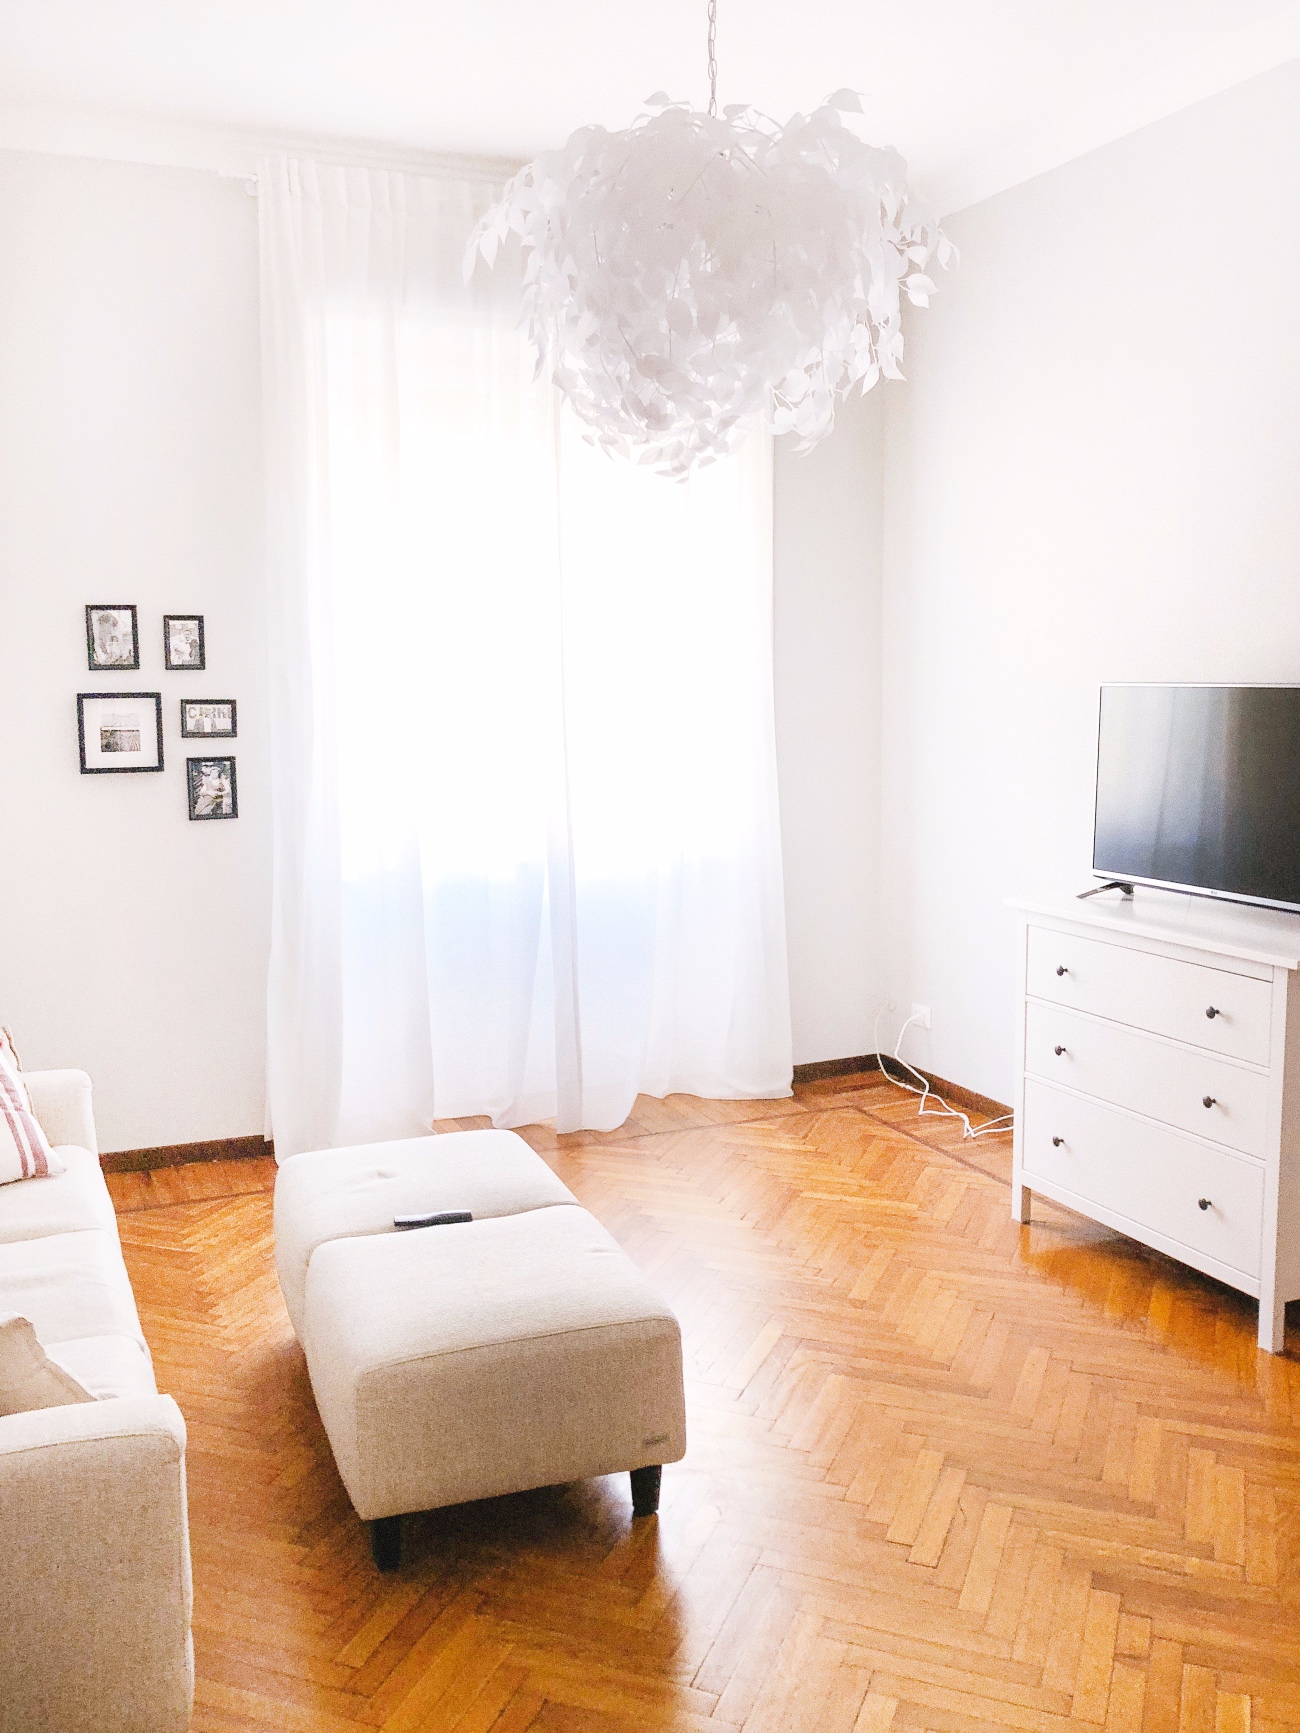 Gebruik lichte meubels voor meer daglicht in huis.